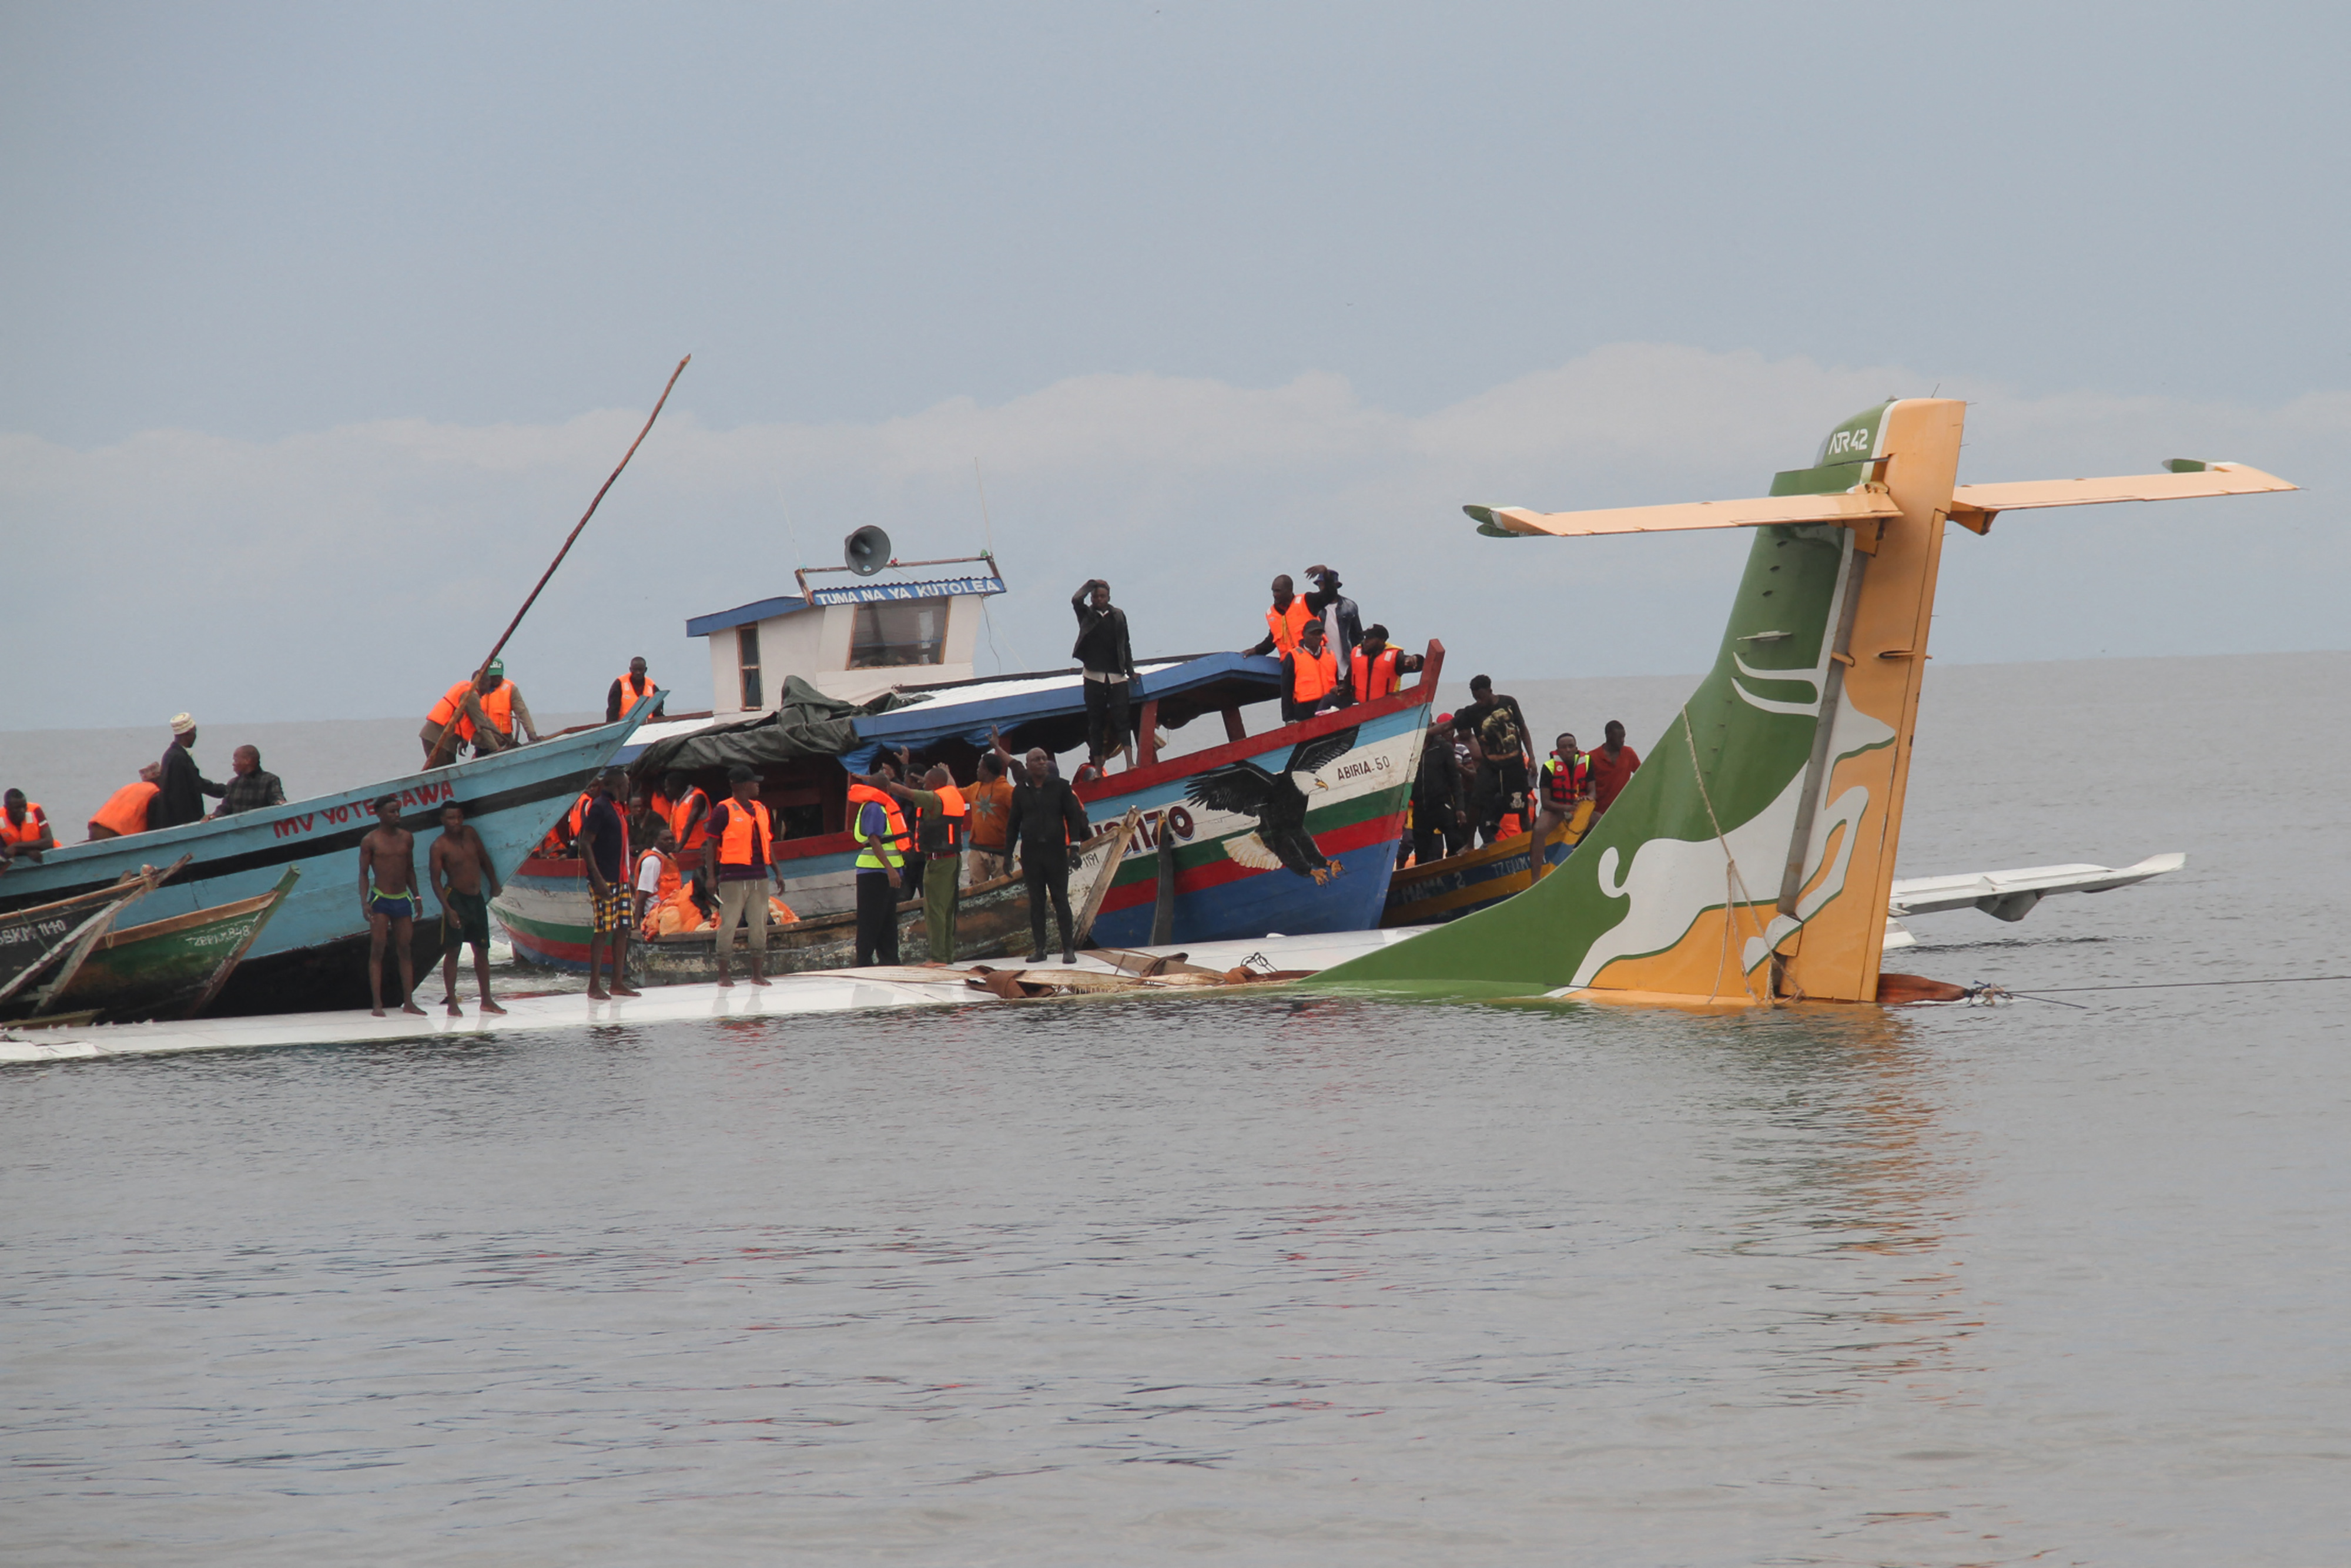 A Precision Air flight crashed into Lake Victoria in Tanzania, killing 19. 